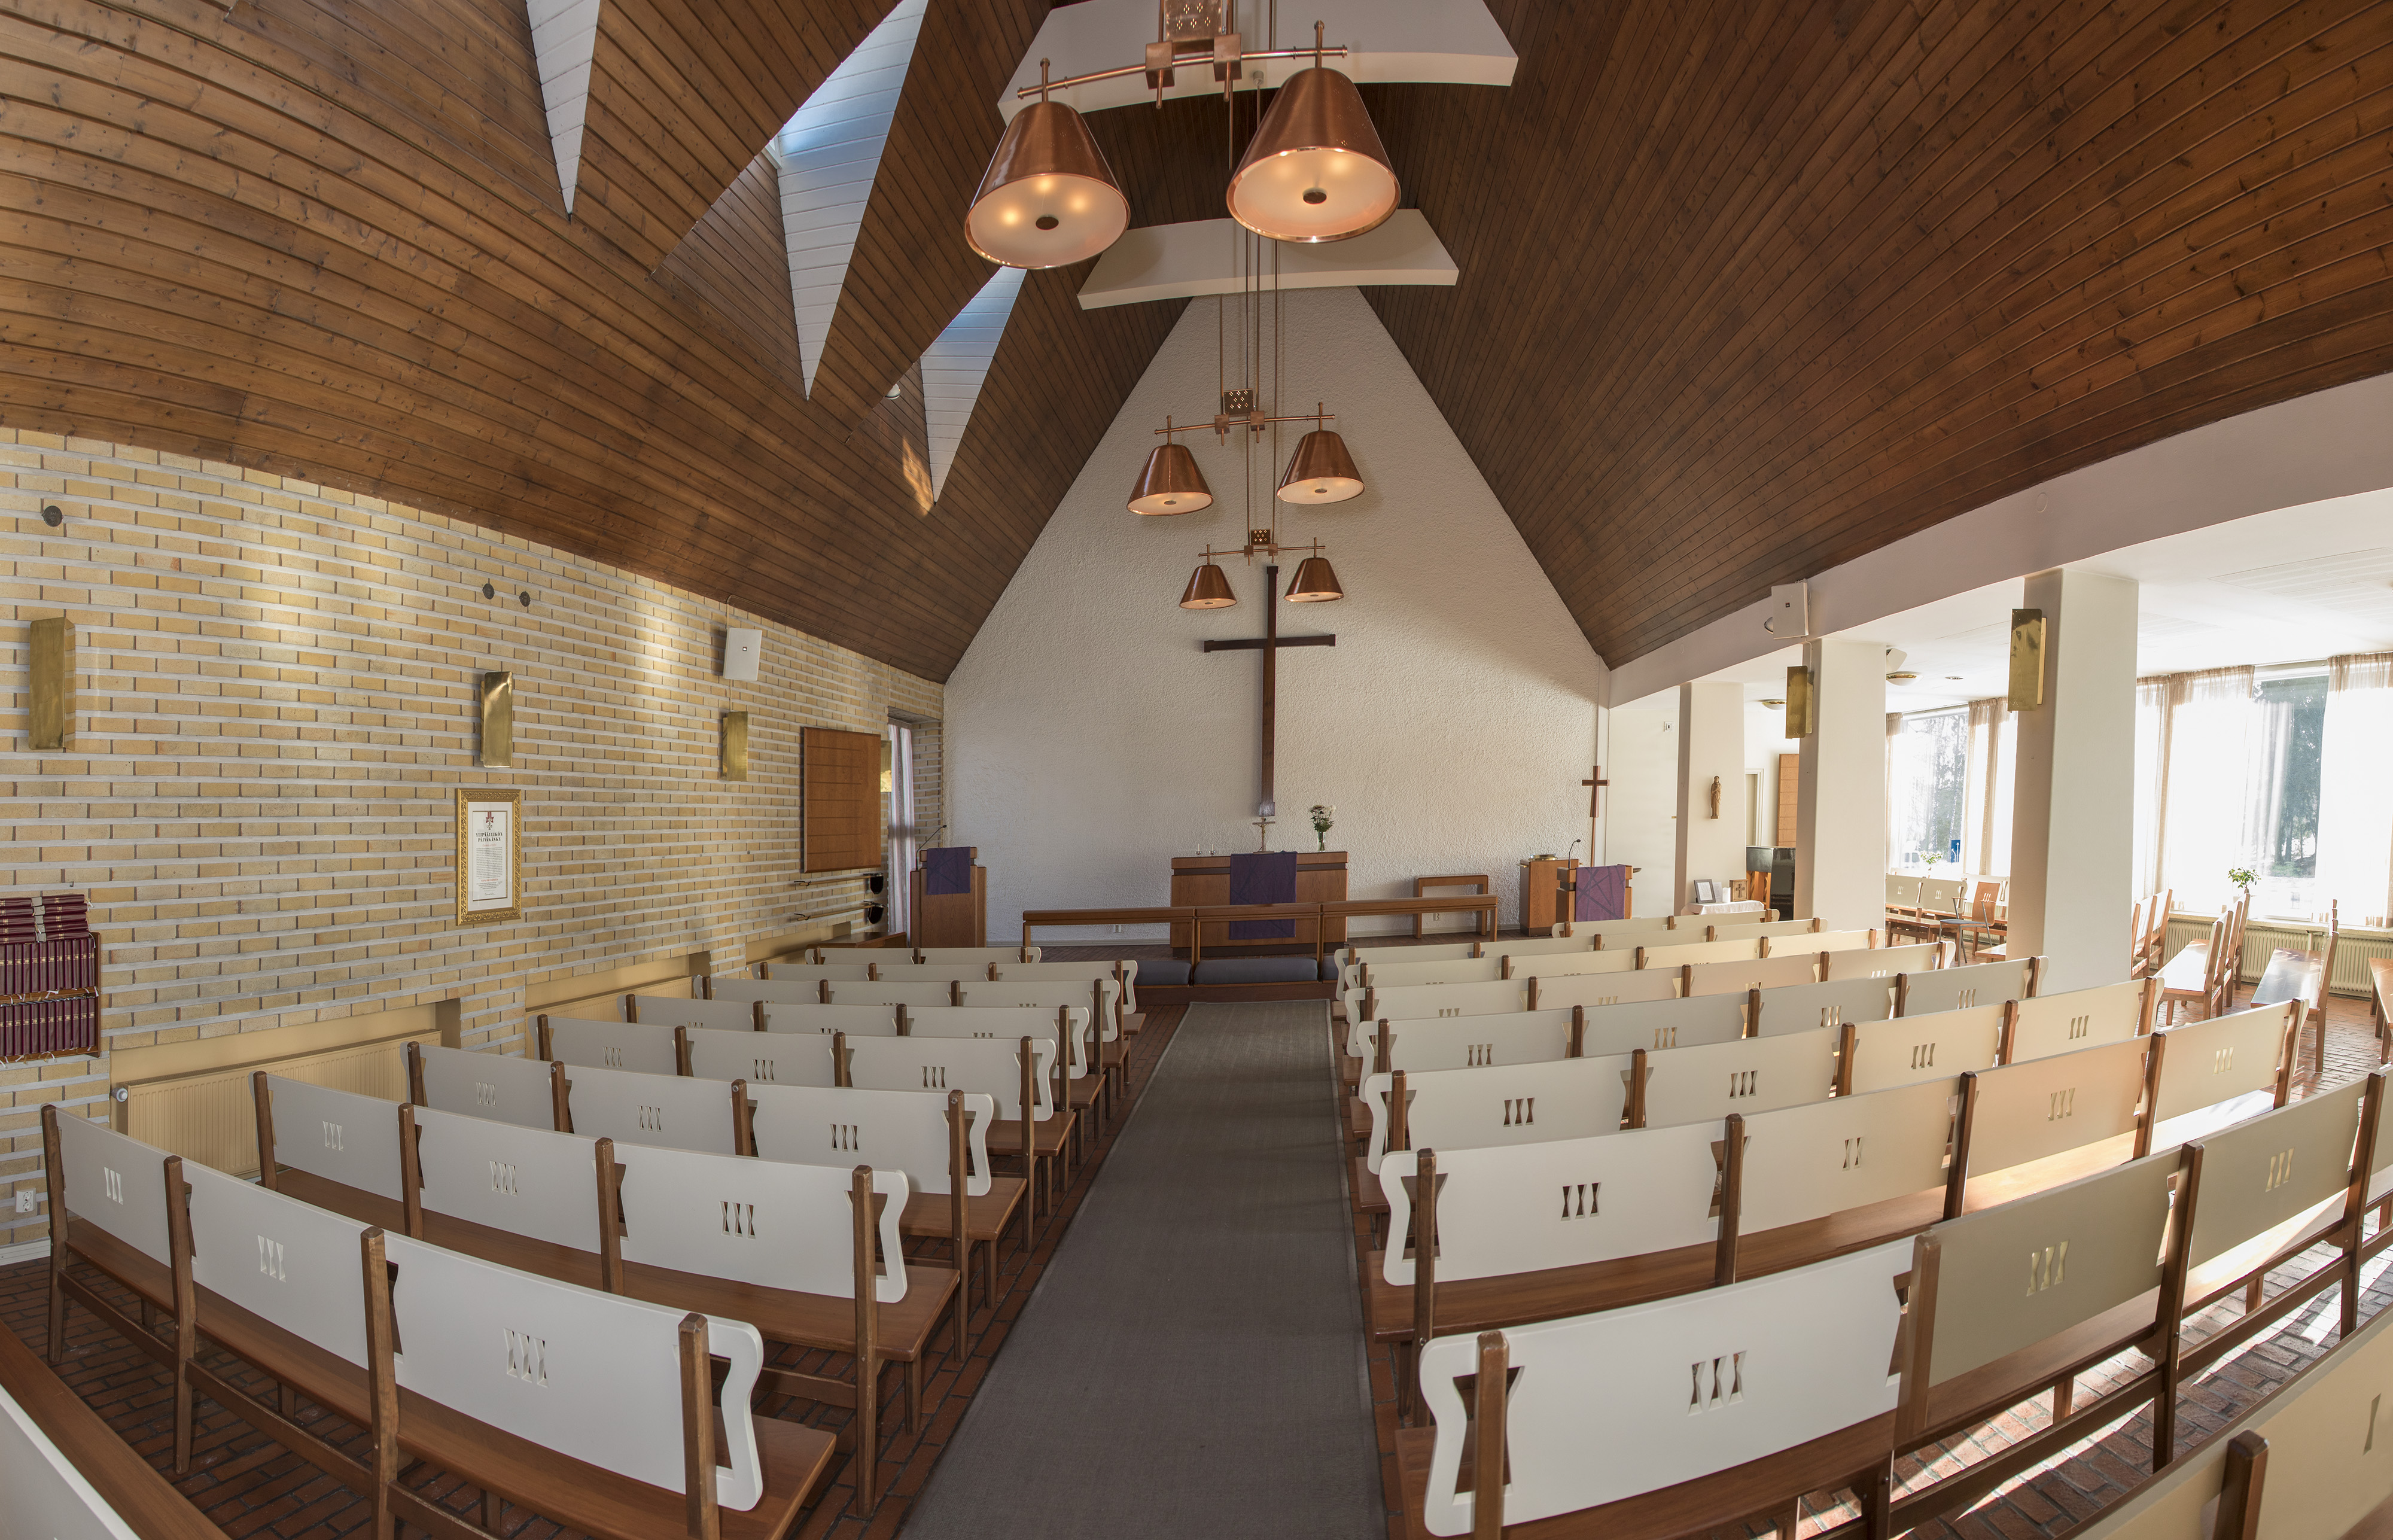 Sisäkuva Launeen kirkon kirkkosalista.